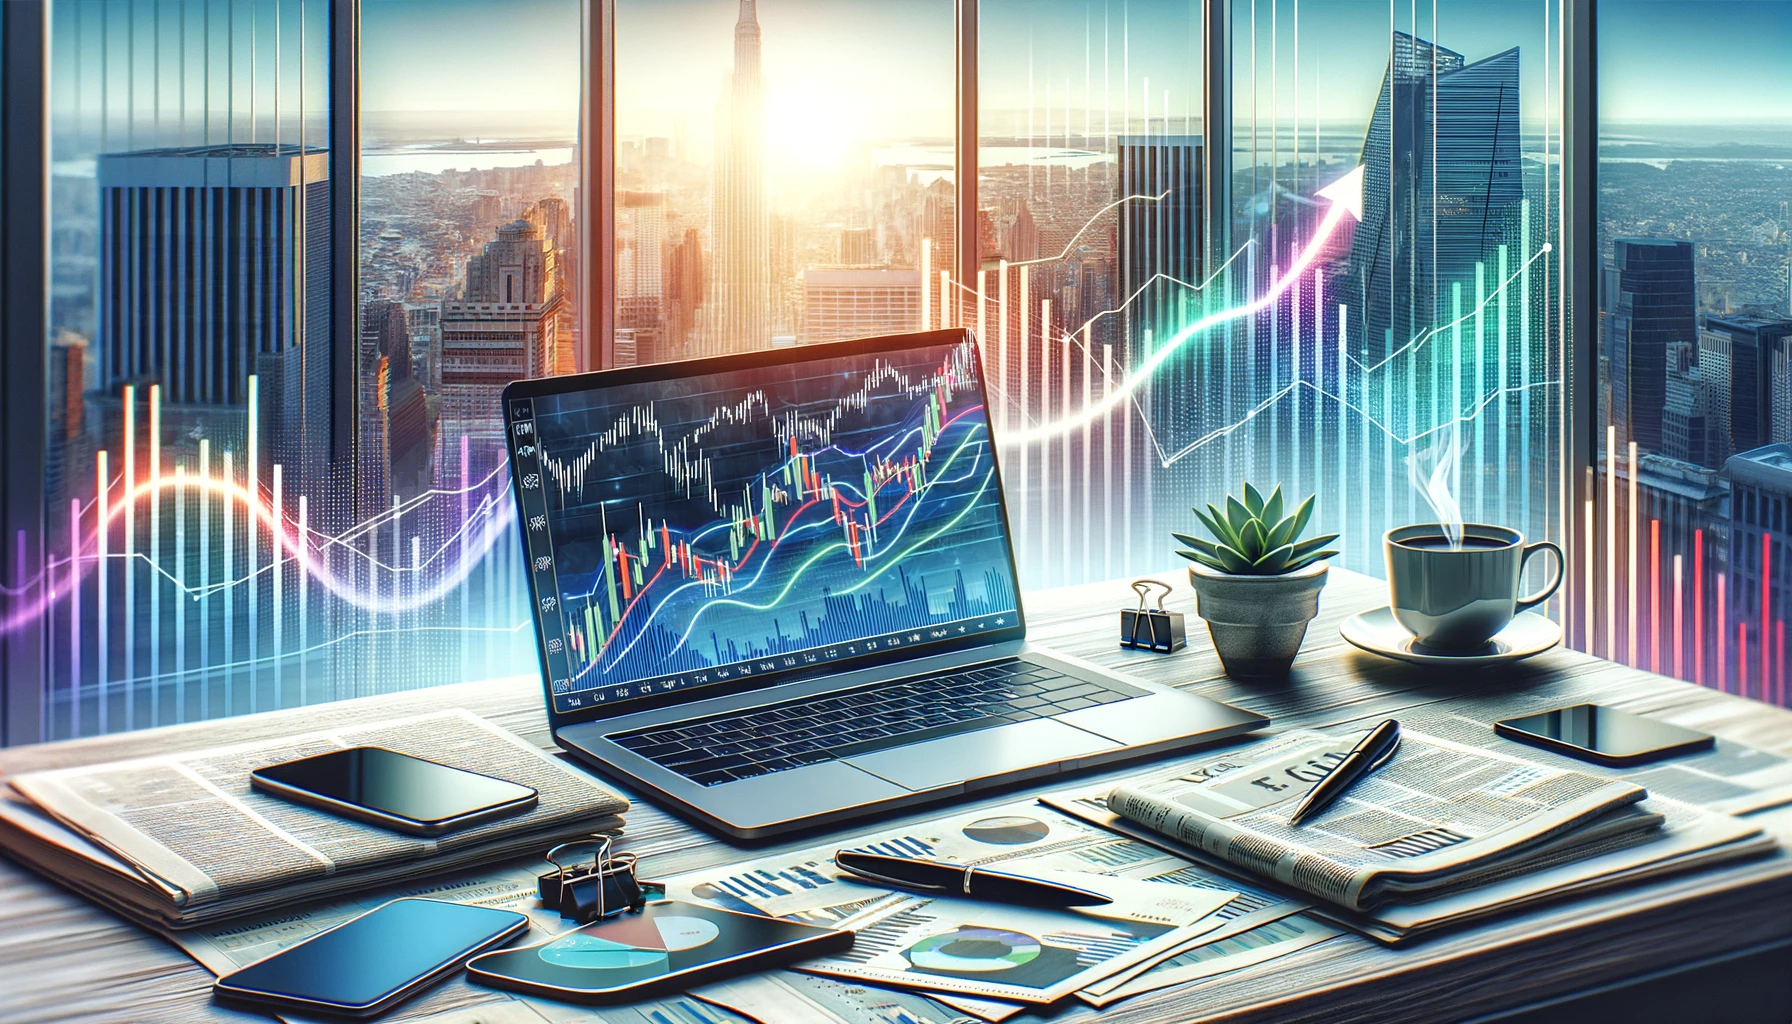 モダンなオフィスのデスクには、株式市場のチャートが表示されたノートパソコン、コーヒーカップ、金融新聞、ペンが置かれ、背景には都会の風景が大きな窓から見える。画像には成長と投資成功を象徴する上昇トレンドラインが重ねられている。